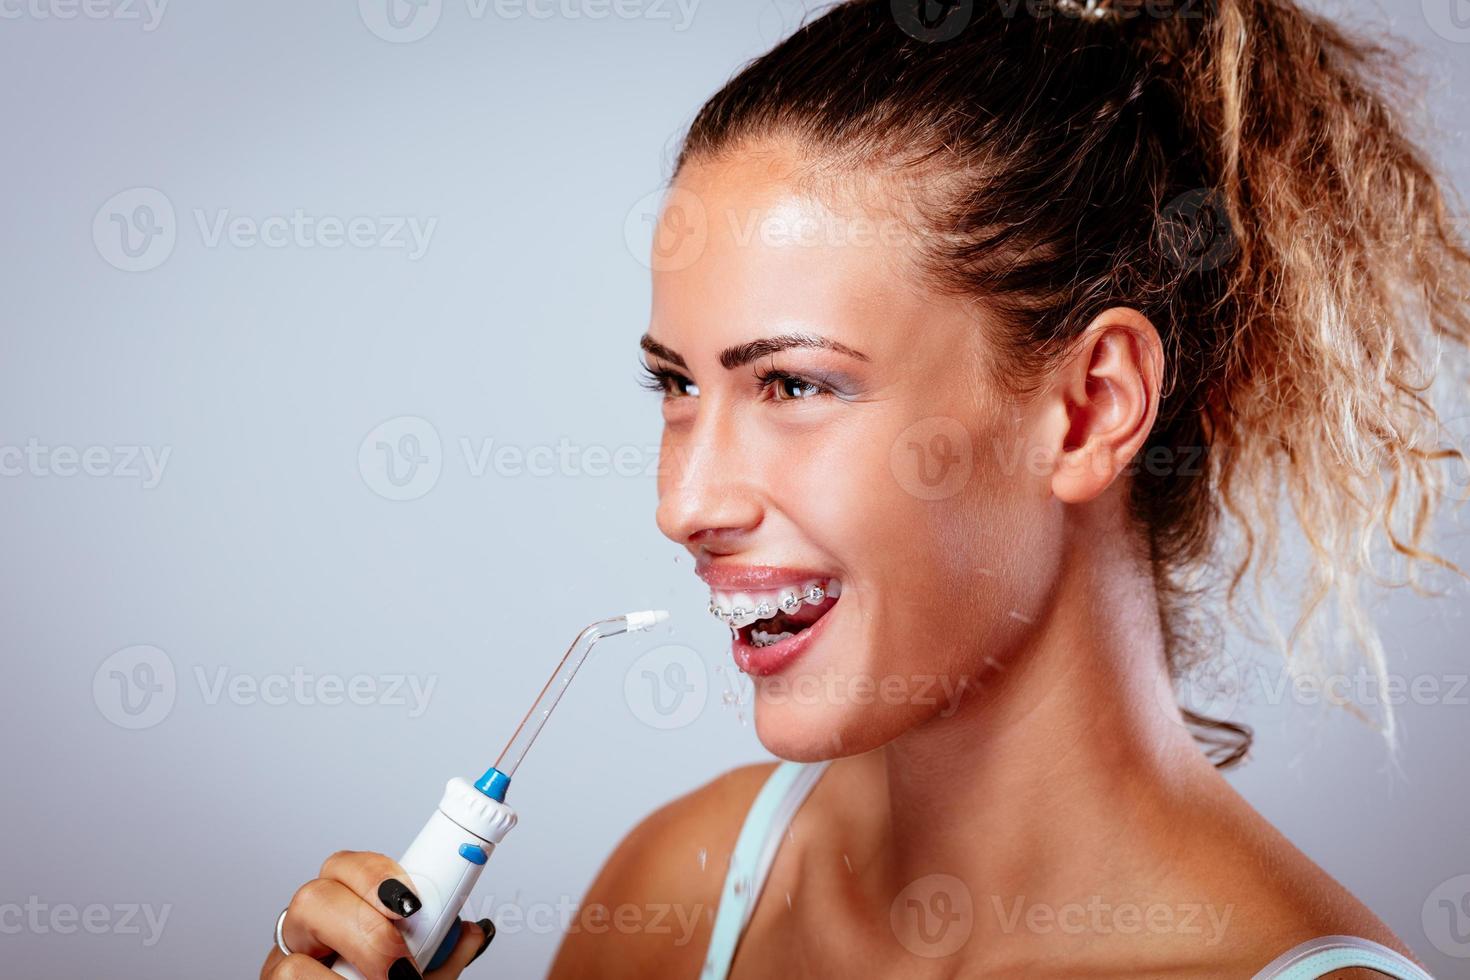 spazzolatura denti con acqua filo interdentale foto